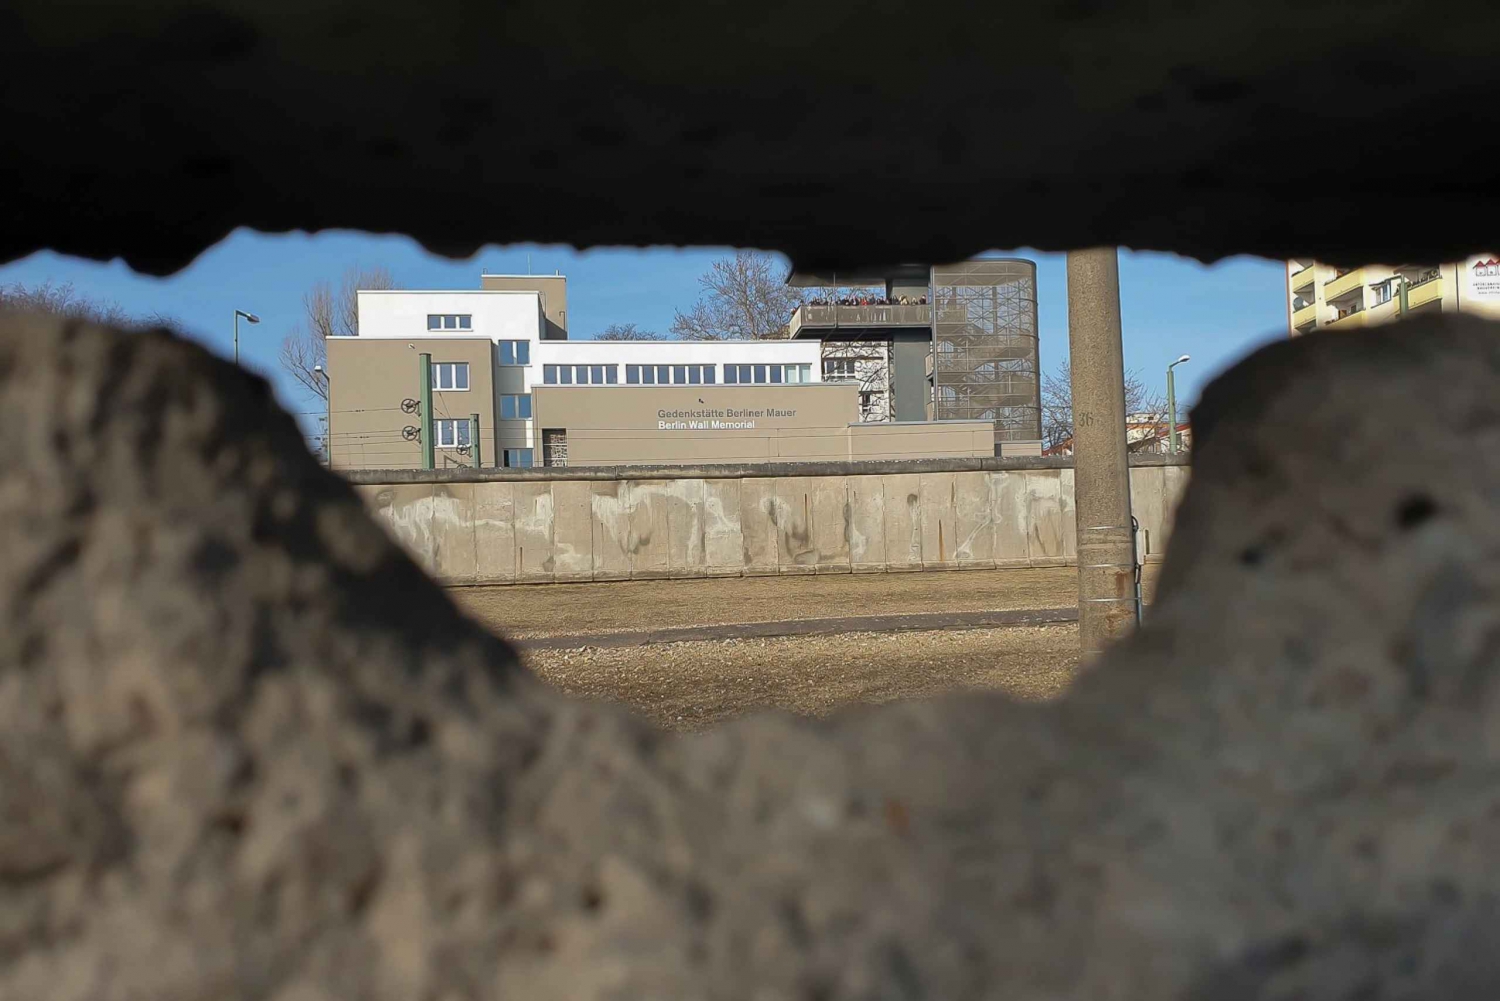 Øst-Berlin og muren: Vandringstur